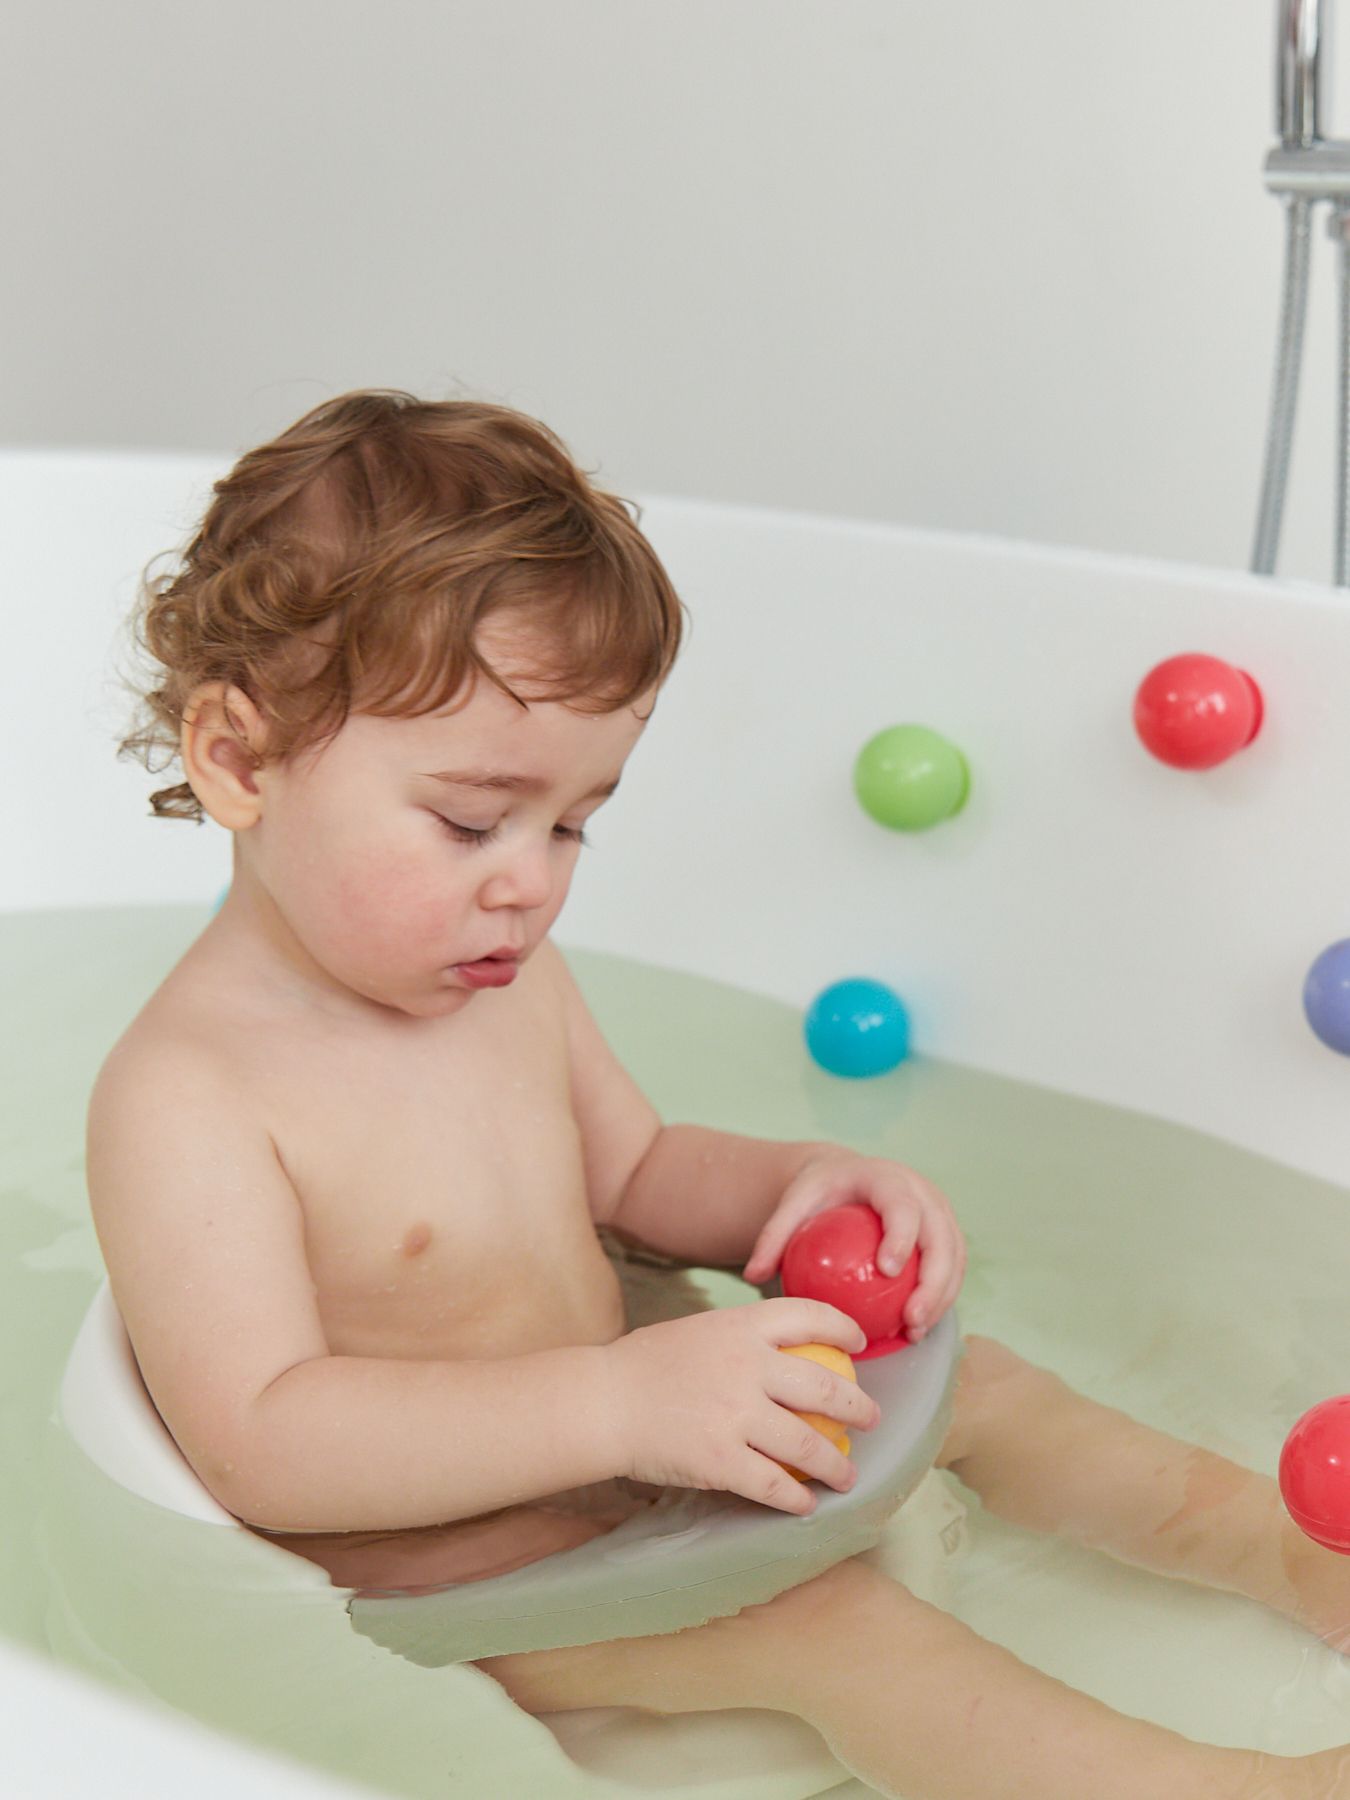 Набор ПВХ-игрушек для ванной IQ-BUBBLES Happy Baby